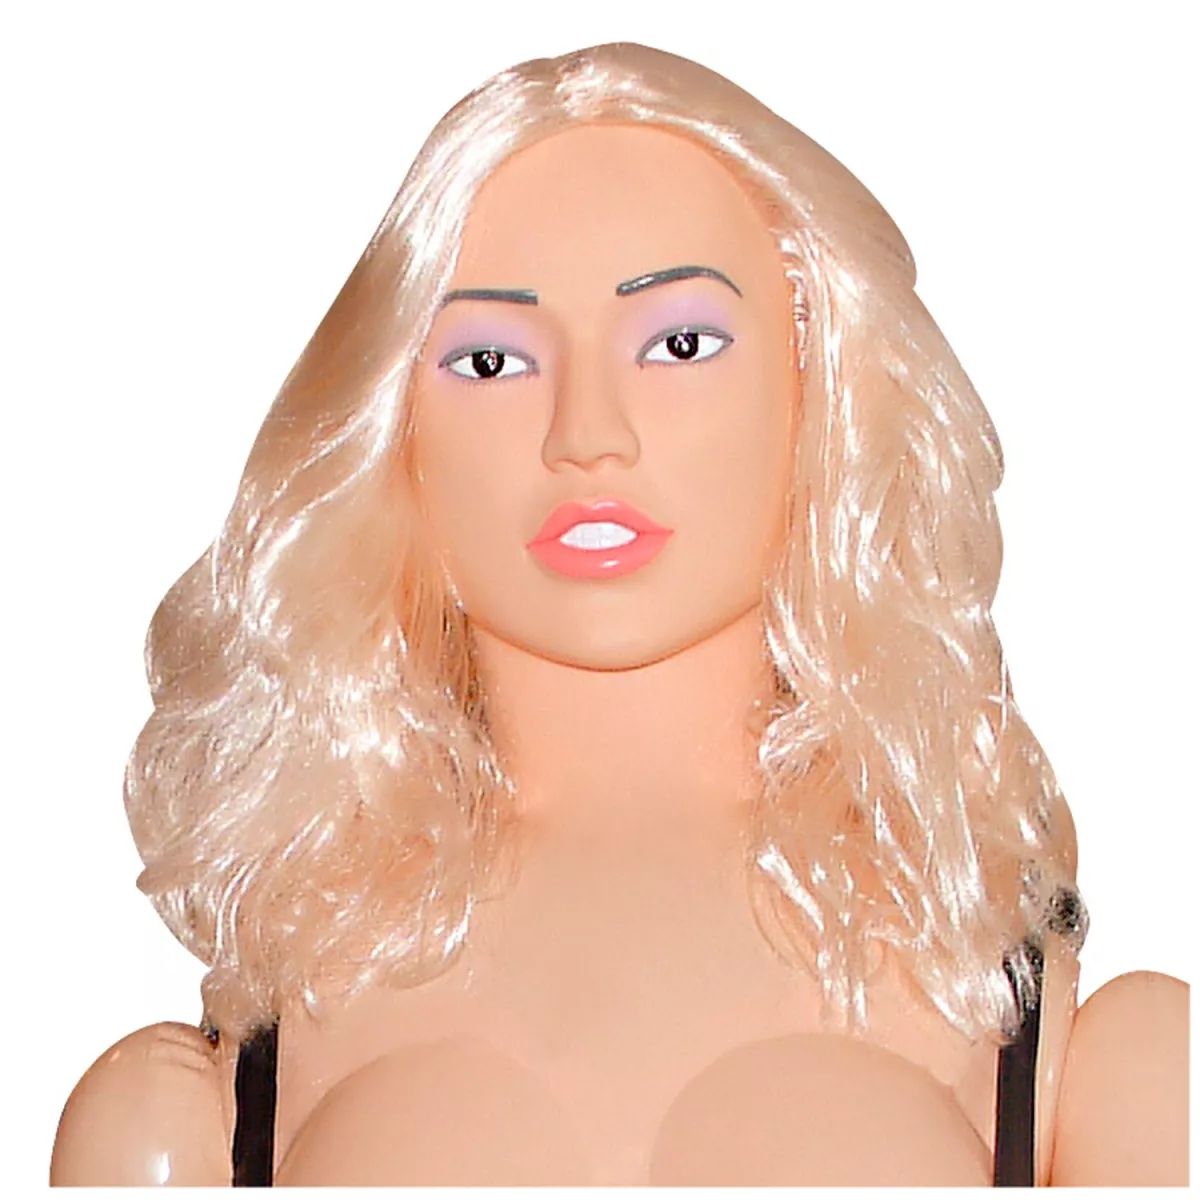 #2 - You2Toys Natalie Love Doll Oppustelig Dukke med Vibrator   - Nude